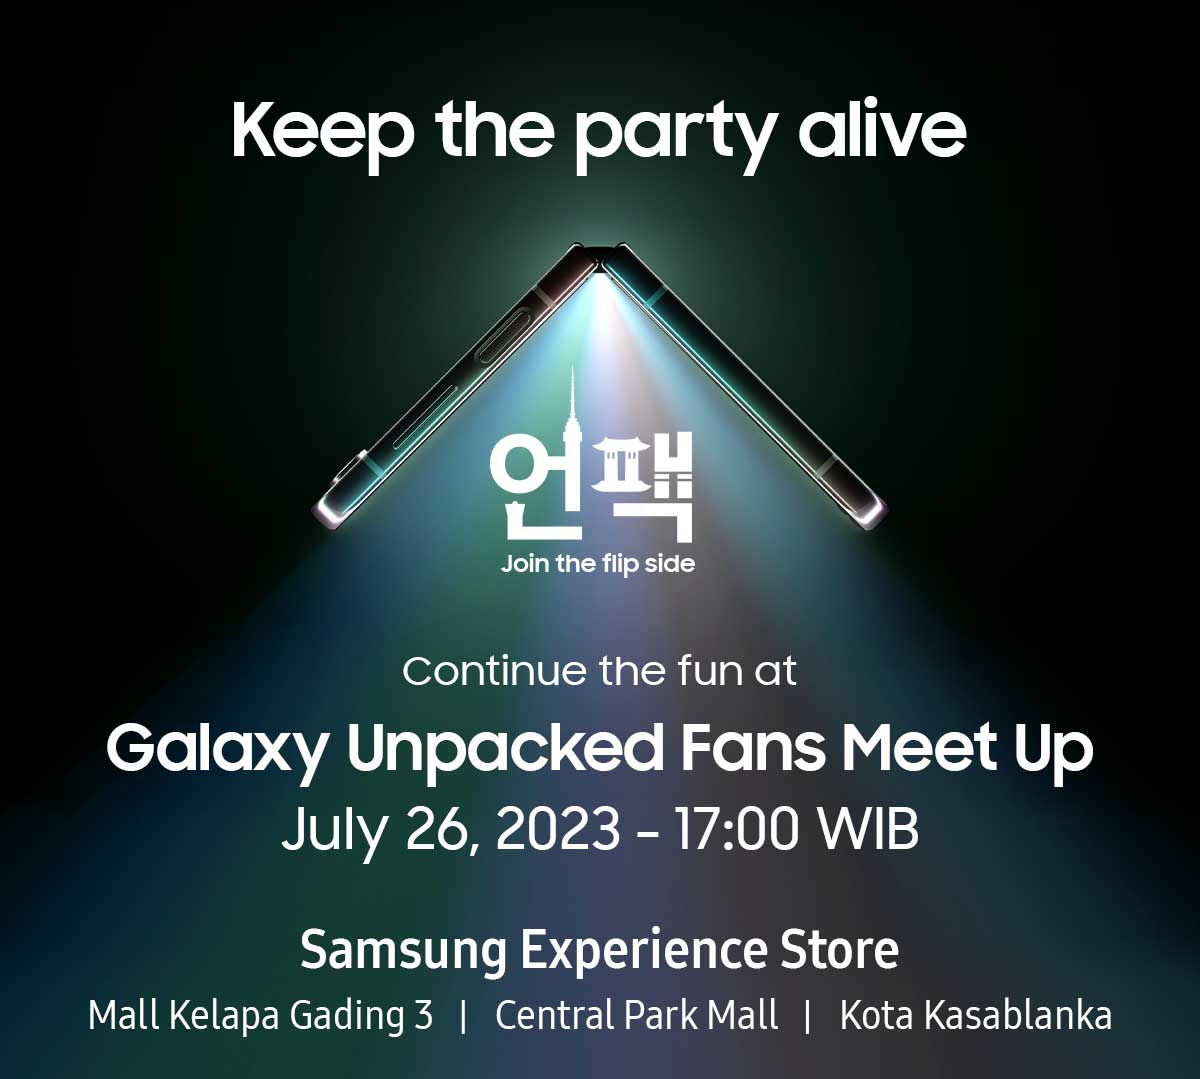 Galaxy Unpacked Fans Meet Up